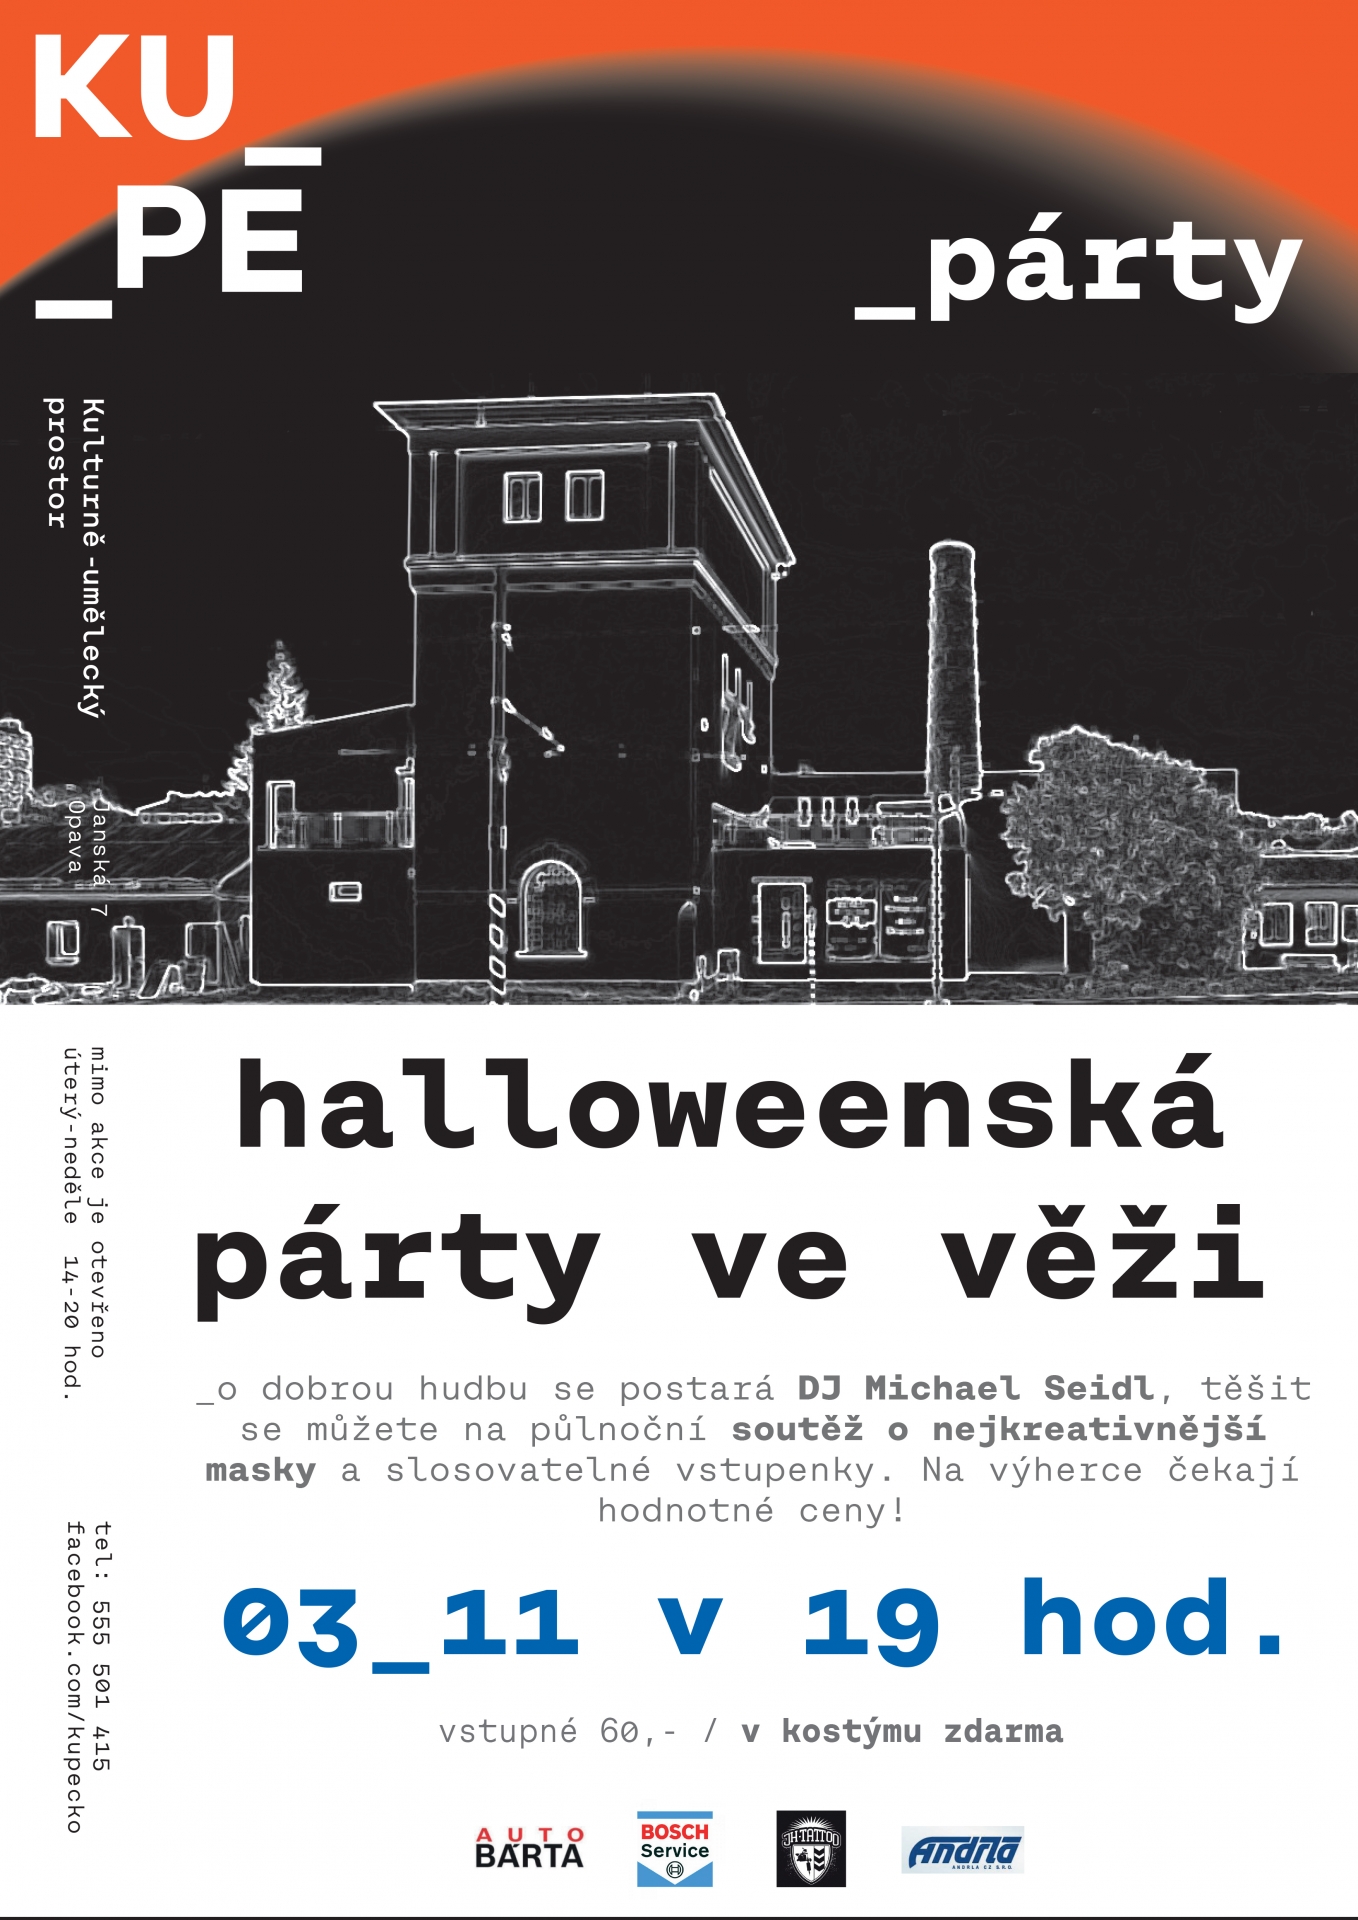 Halloweenská párty s DJ Michalem Seidlem